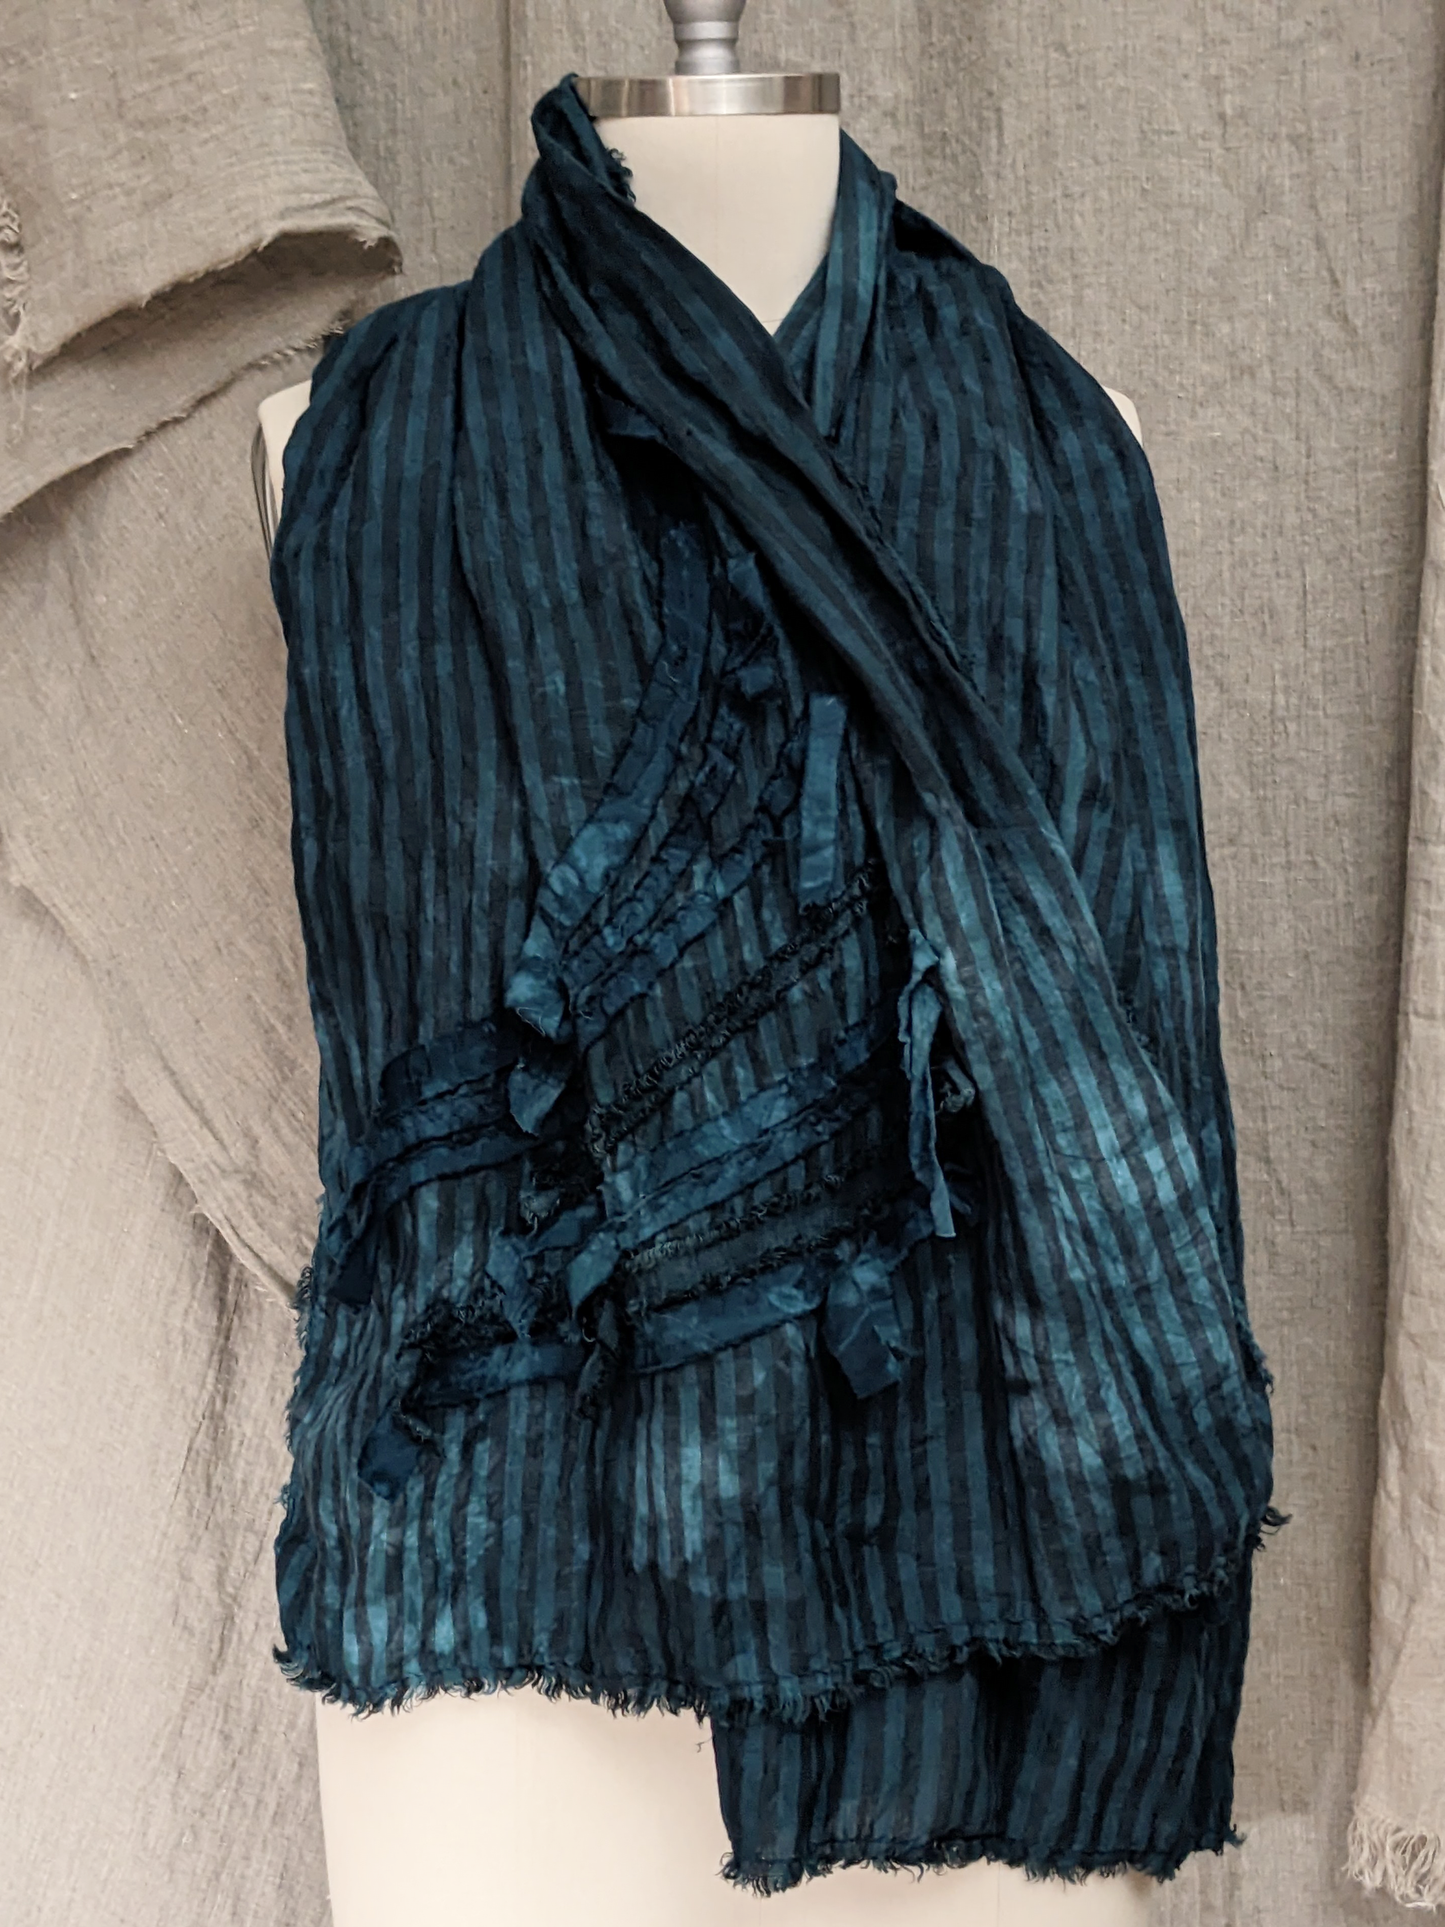 secret lentil linen striped scarf shawl deep teal